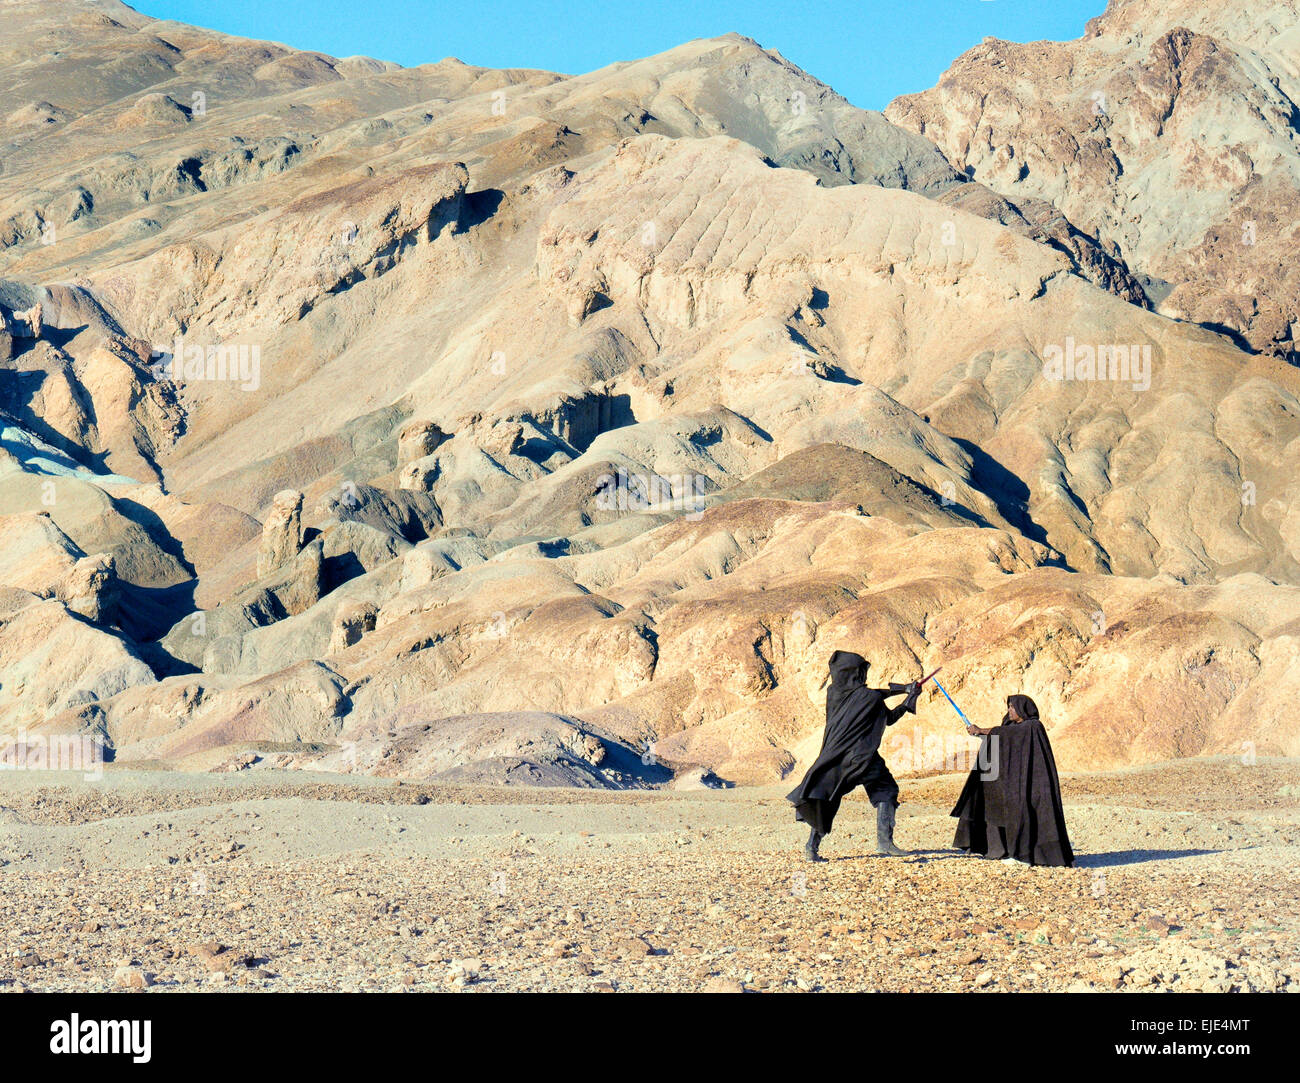 Dos actores recrean una escena de una película de 'Star Wars'. Foto de stock